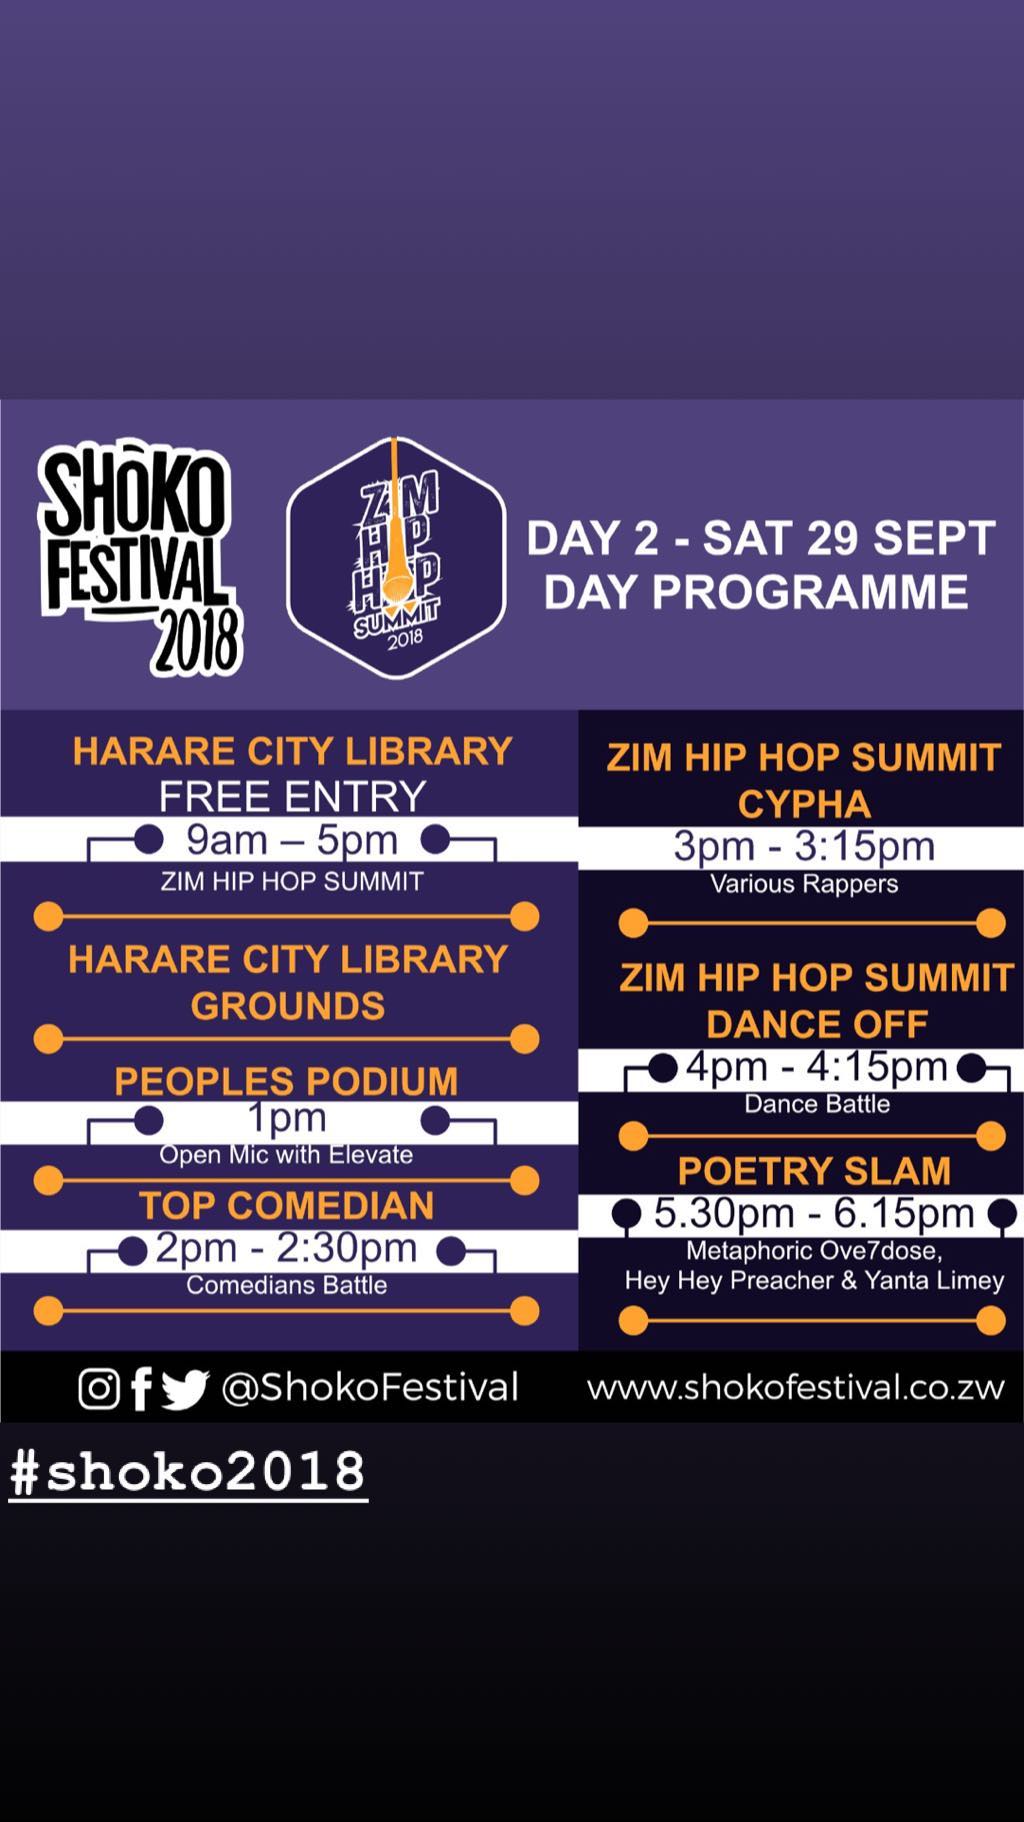 Shoko Festival 2018 and Zimbabwe Cholera Outbreak (IMG 4).jpg